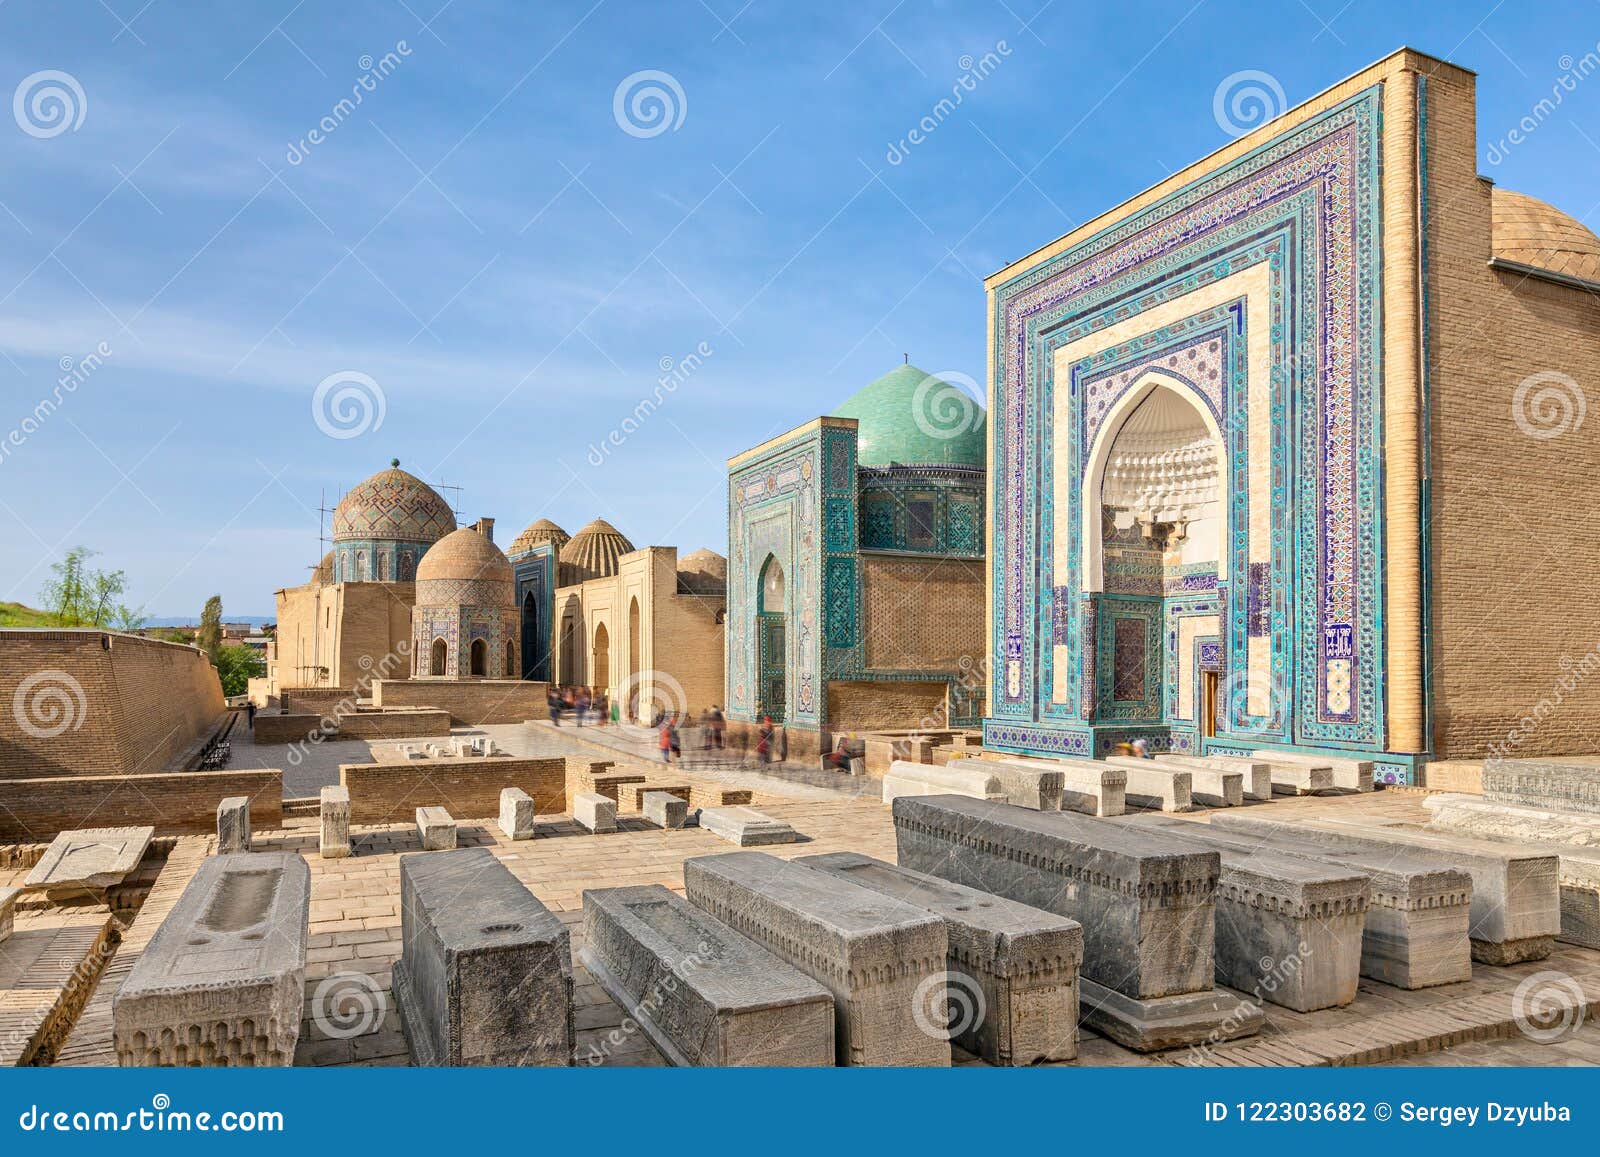 shah-i-zinda necropolis in samarkand, uzbekistan